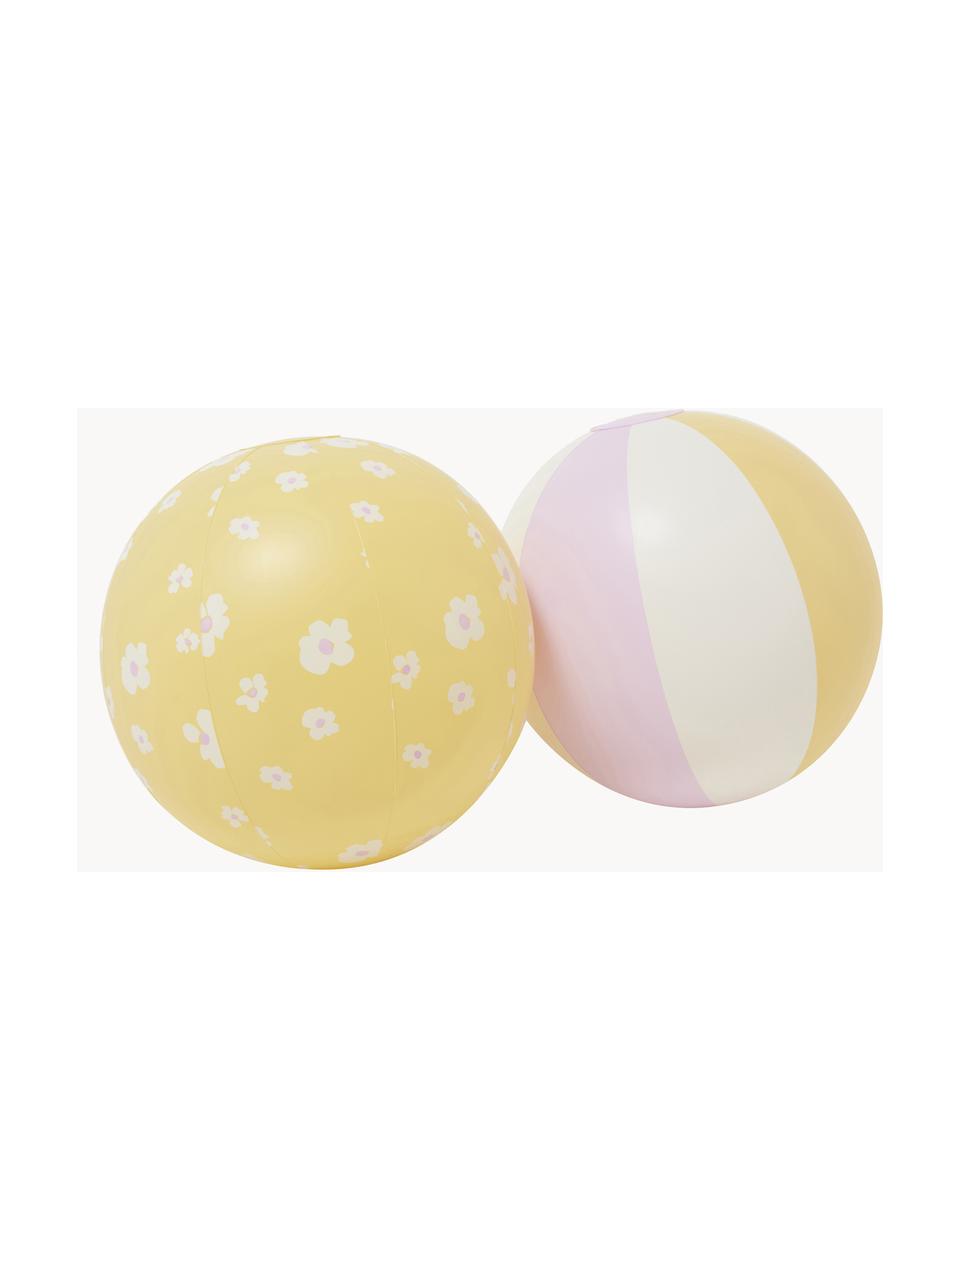 Sada nafukovacích plážových míčů Princess Swan, 2 díly, Umělá hmota, Světle růžová, žlutá, Ø 35 cm